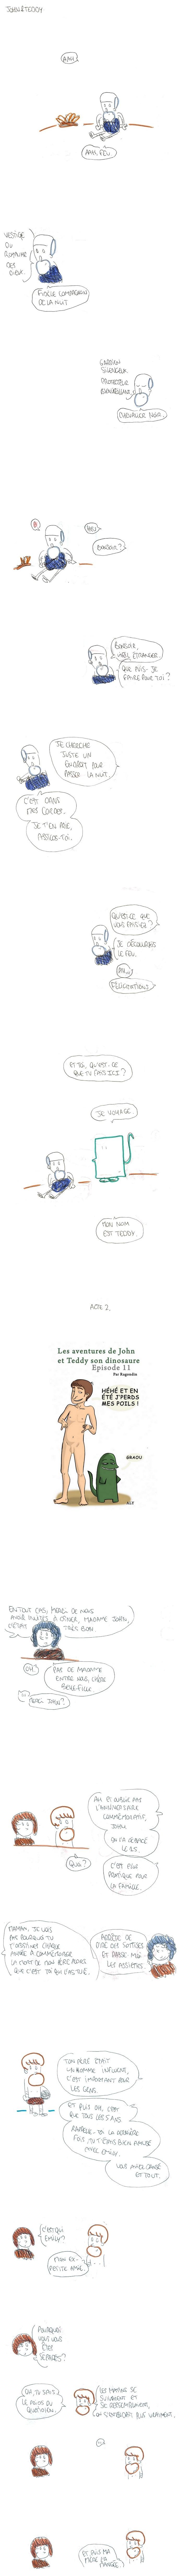 Les aventures de John l'homme préhistorique et de son dinosaure Teddy (11)